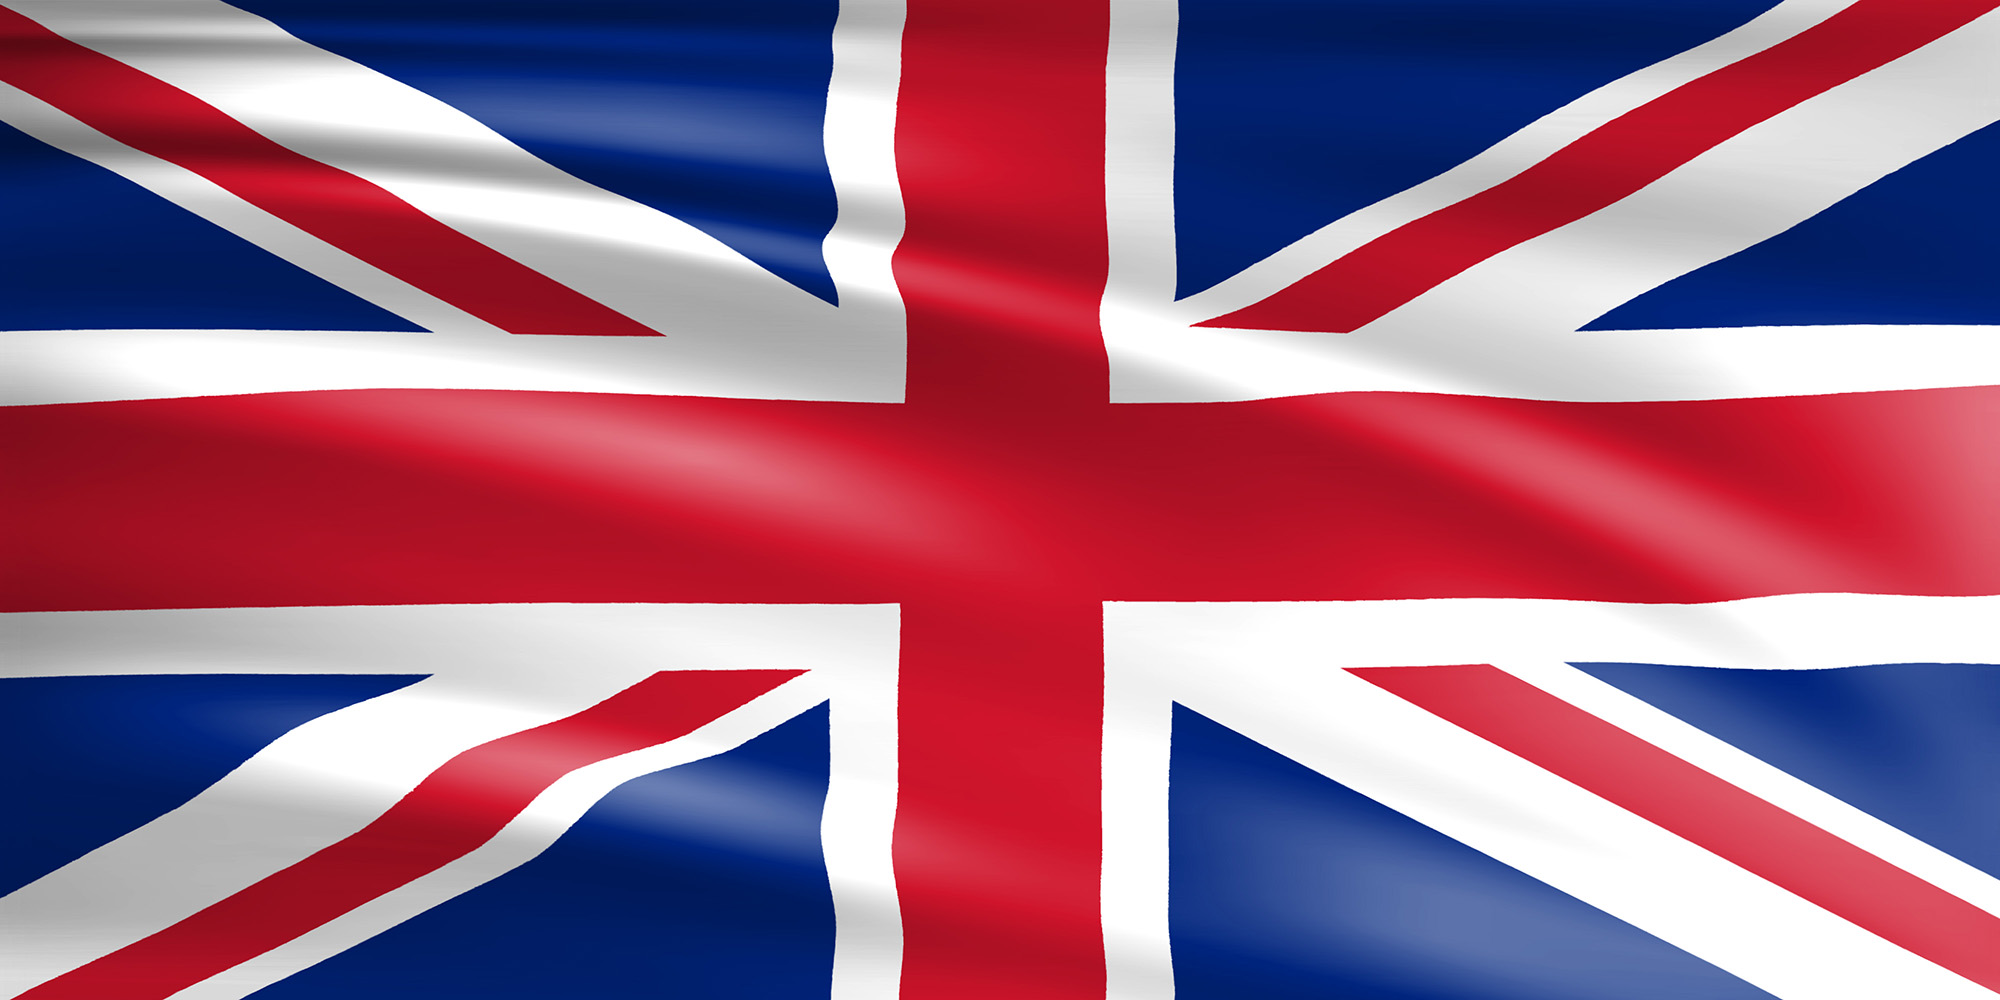 Flagge des Vereinigten Königreichs - Union Jack | Wagrati